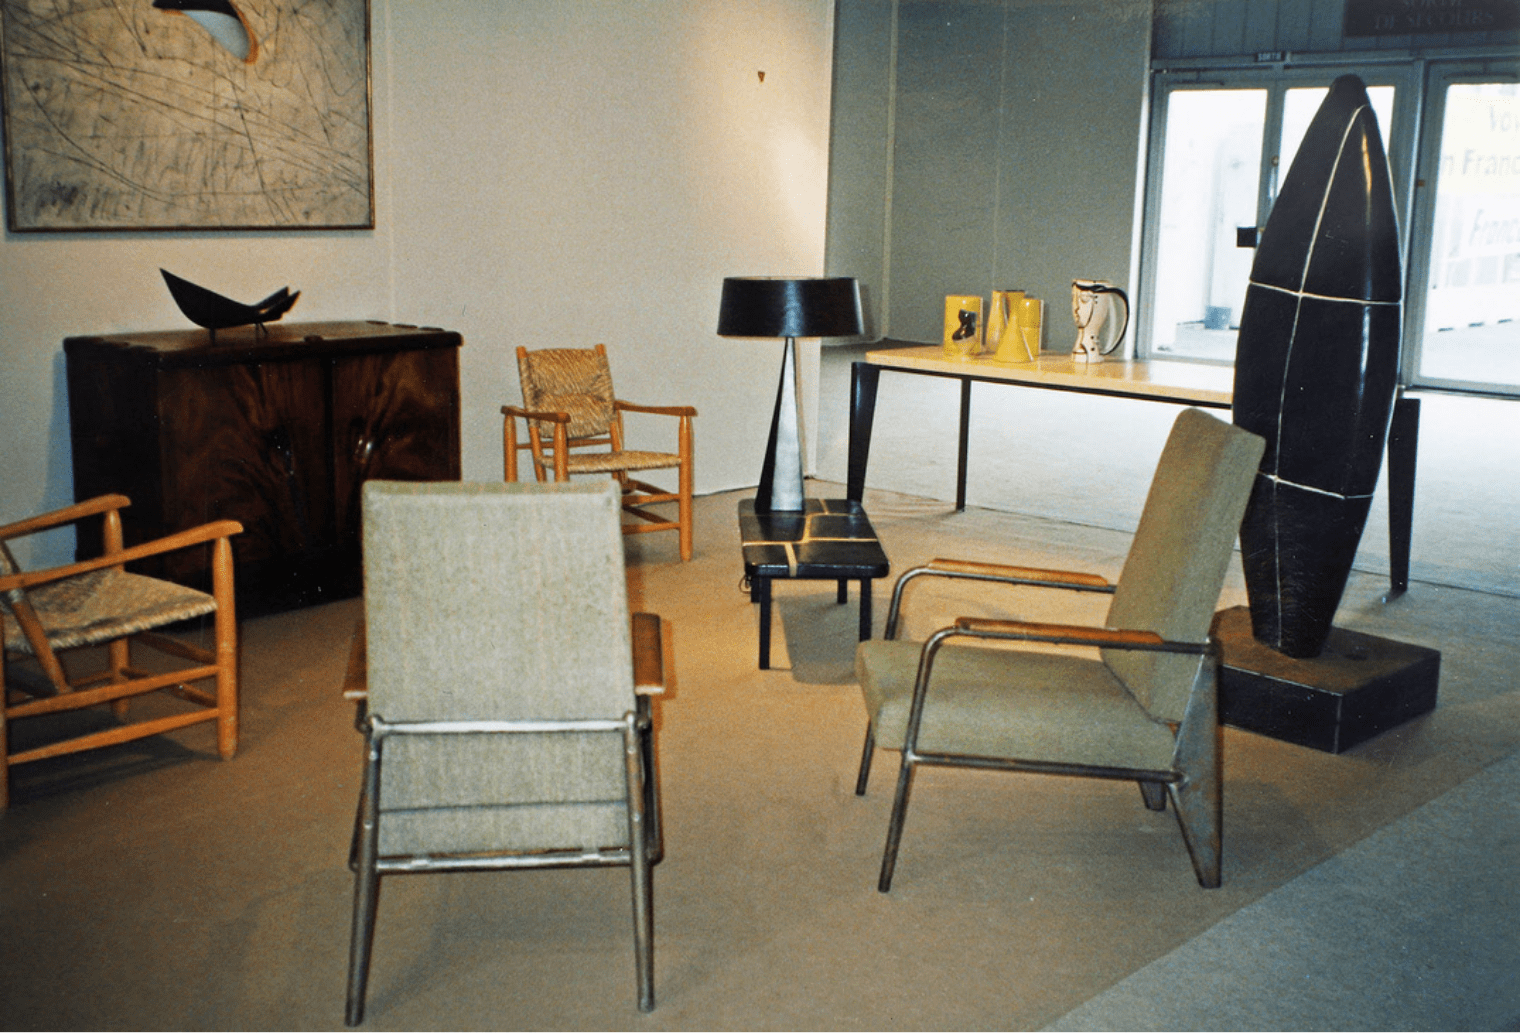 Galerie de Beyrie, Salon de Mars, Paris, 1995 : Georges Jouve, Jean Prouvé, Charlotte Perriand, Alexandre Noll, Georges Noël